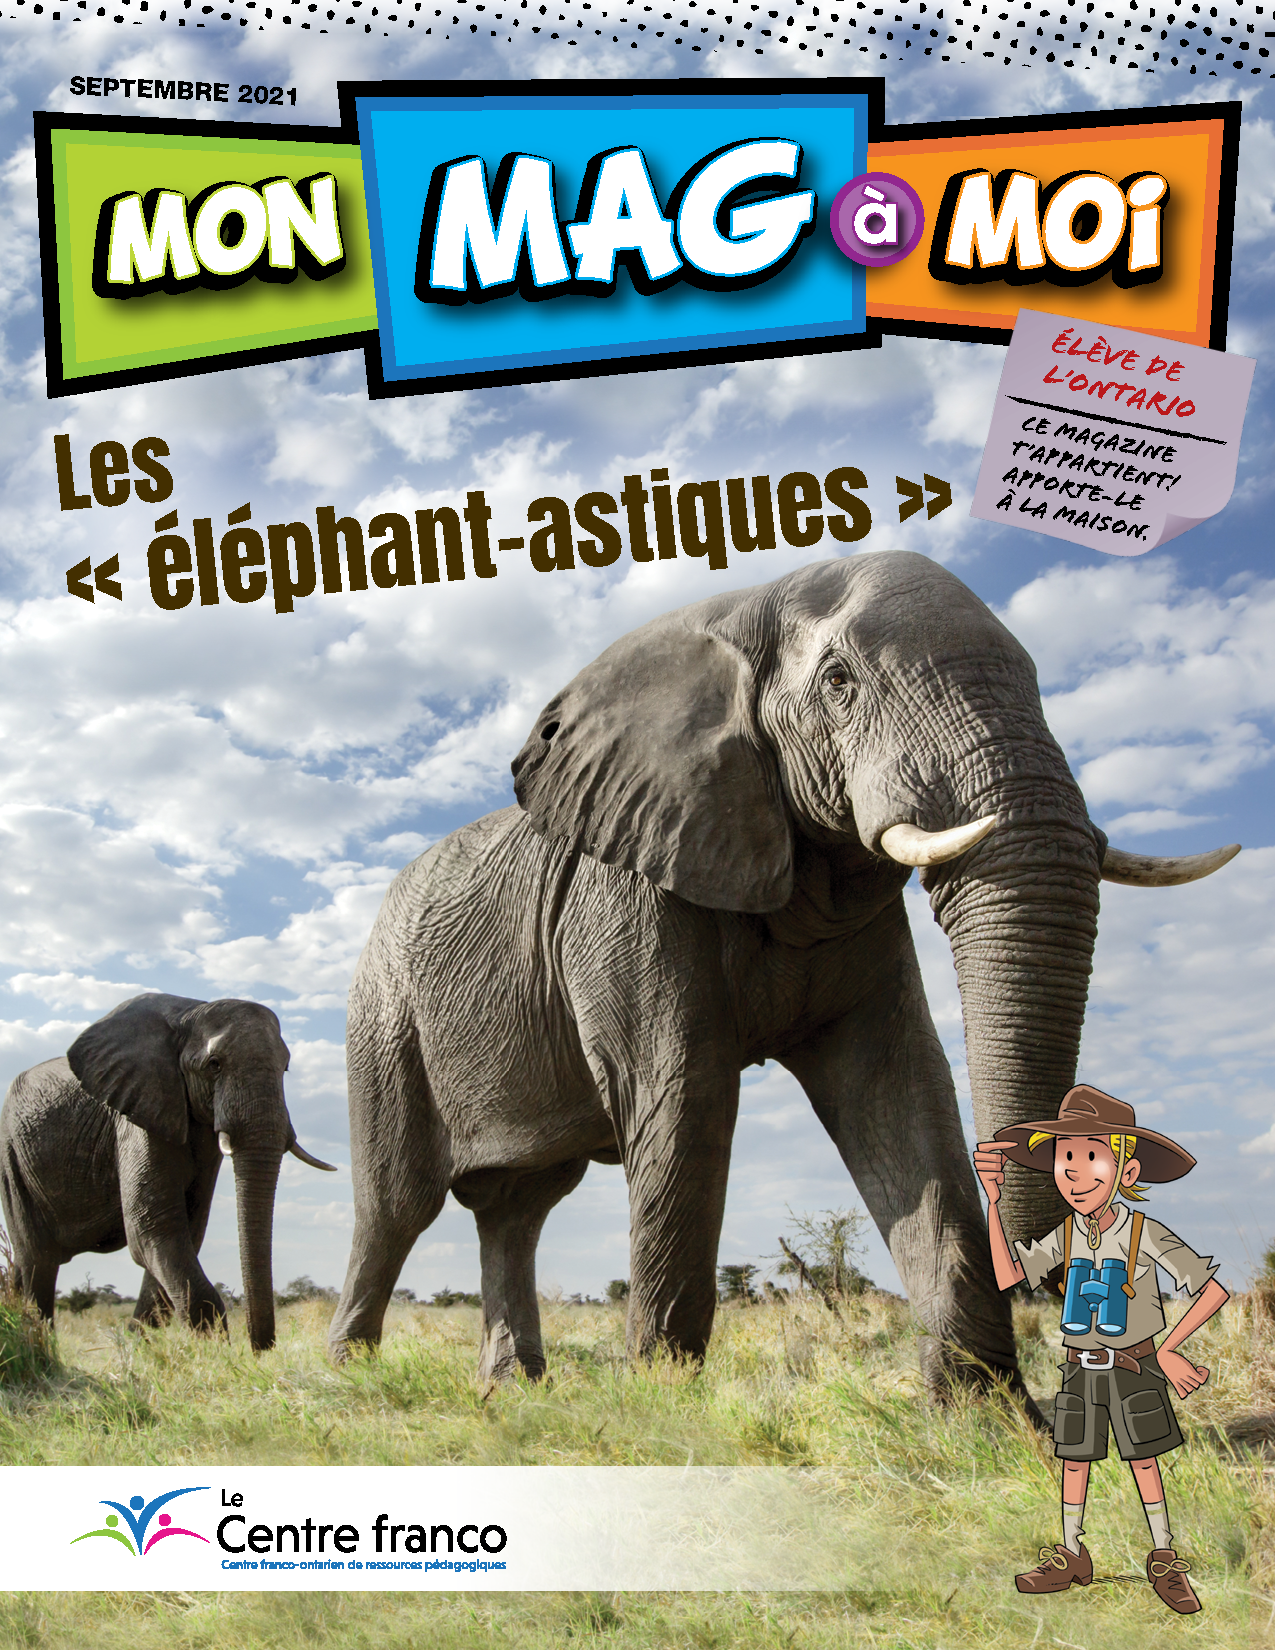 Visionner le magazine Mon Mag à Moi volume 14 numéro 3.